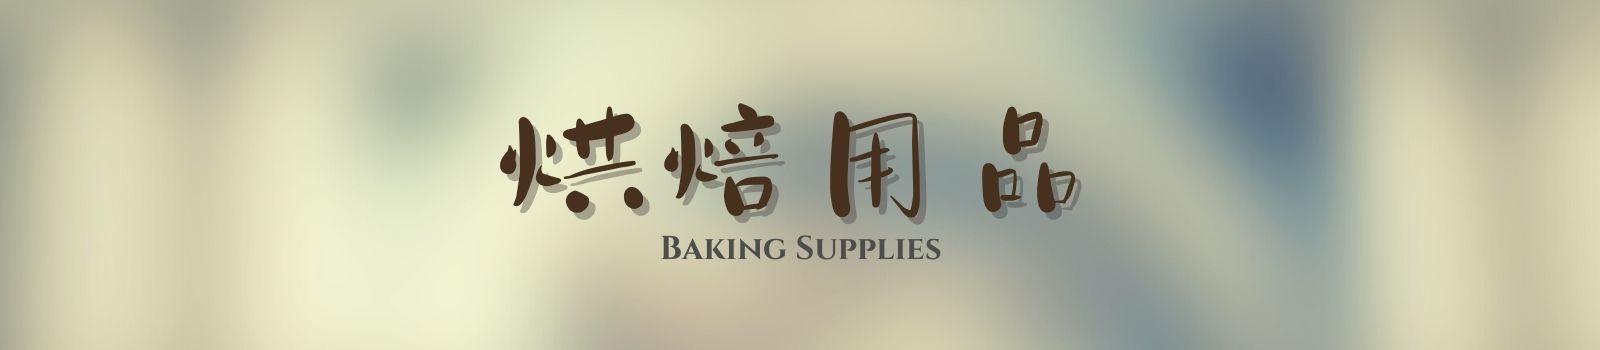 滾餅好容eat! / 滾筒樂 / DIY烘焙用具/ 餅乾模型